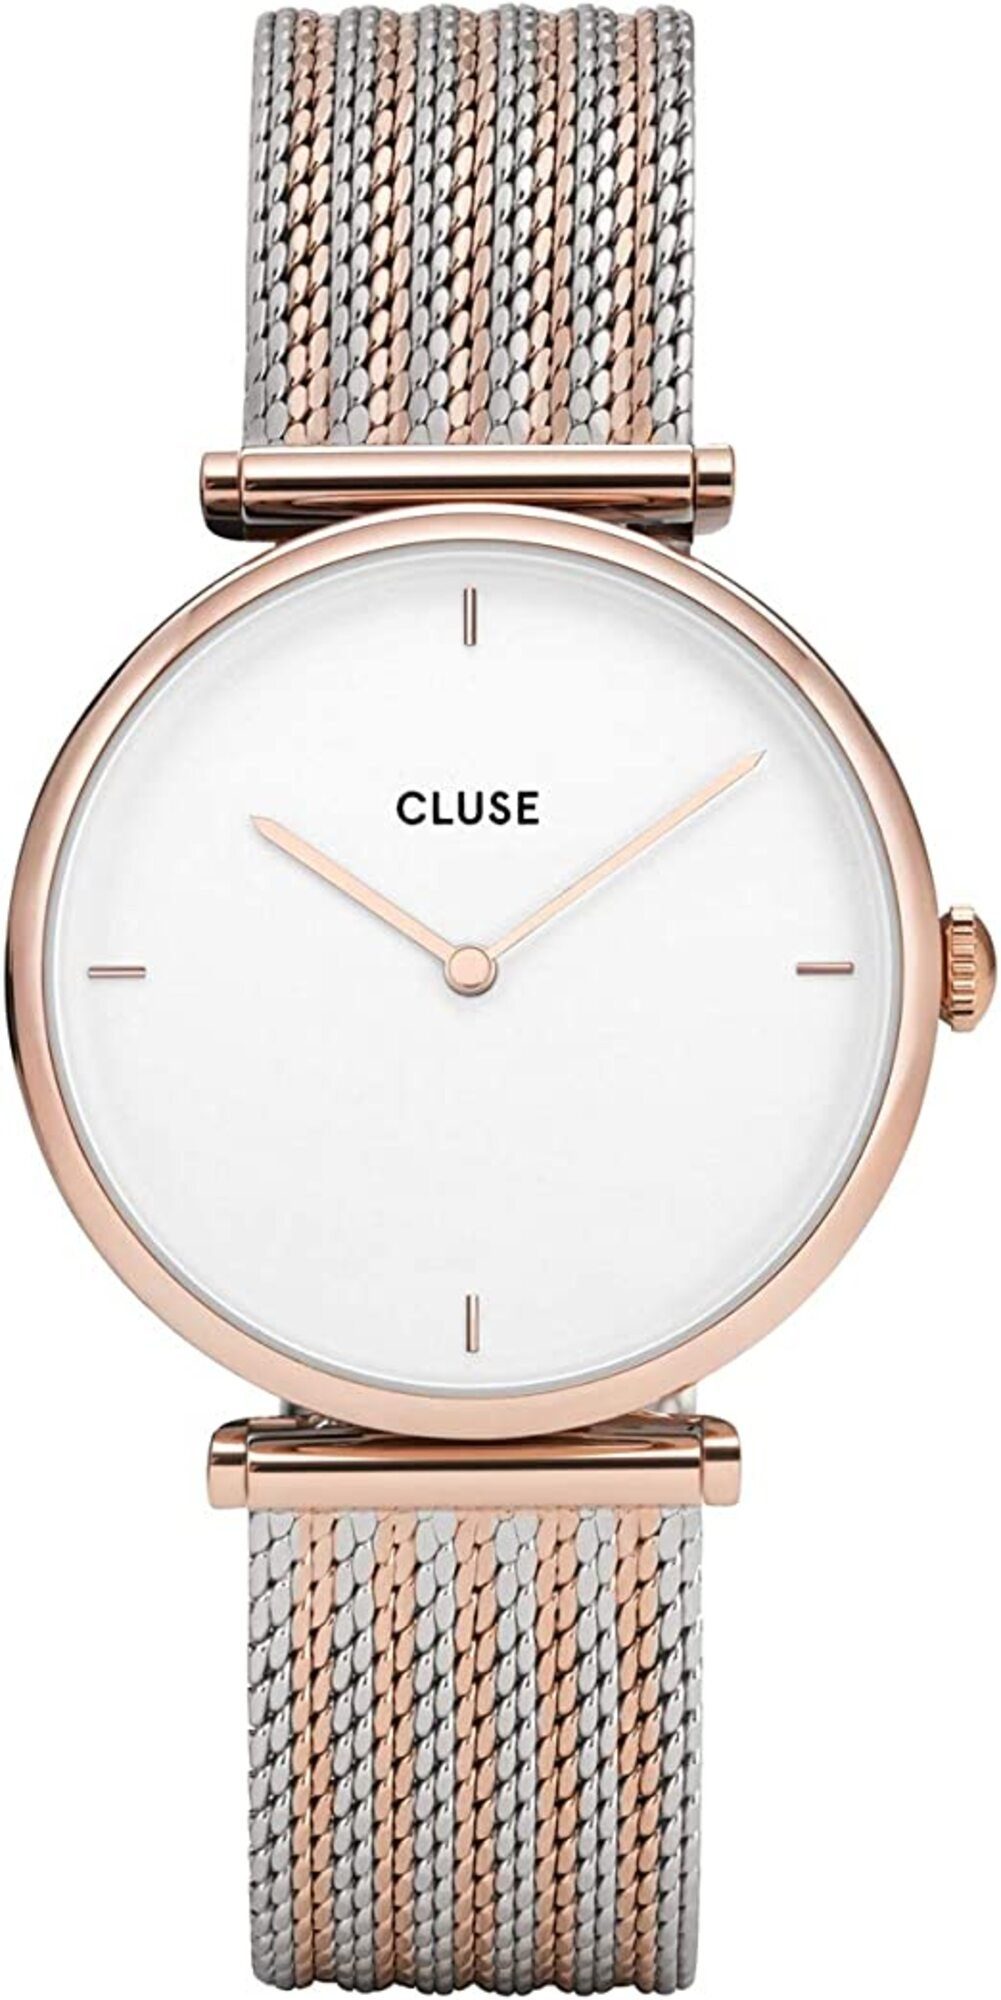 CLUSE Automatikuhr »Cluse Damen Analog Quarz Uhr mit Edelstahl Armband«